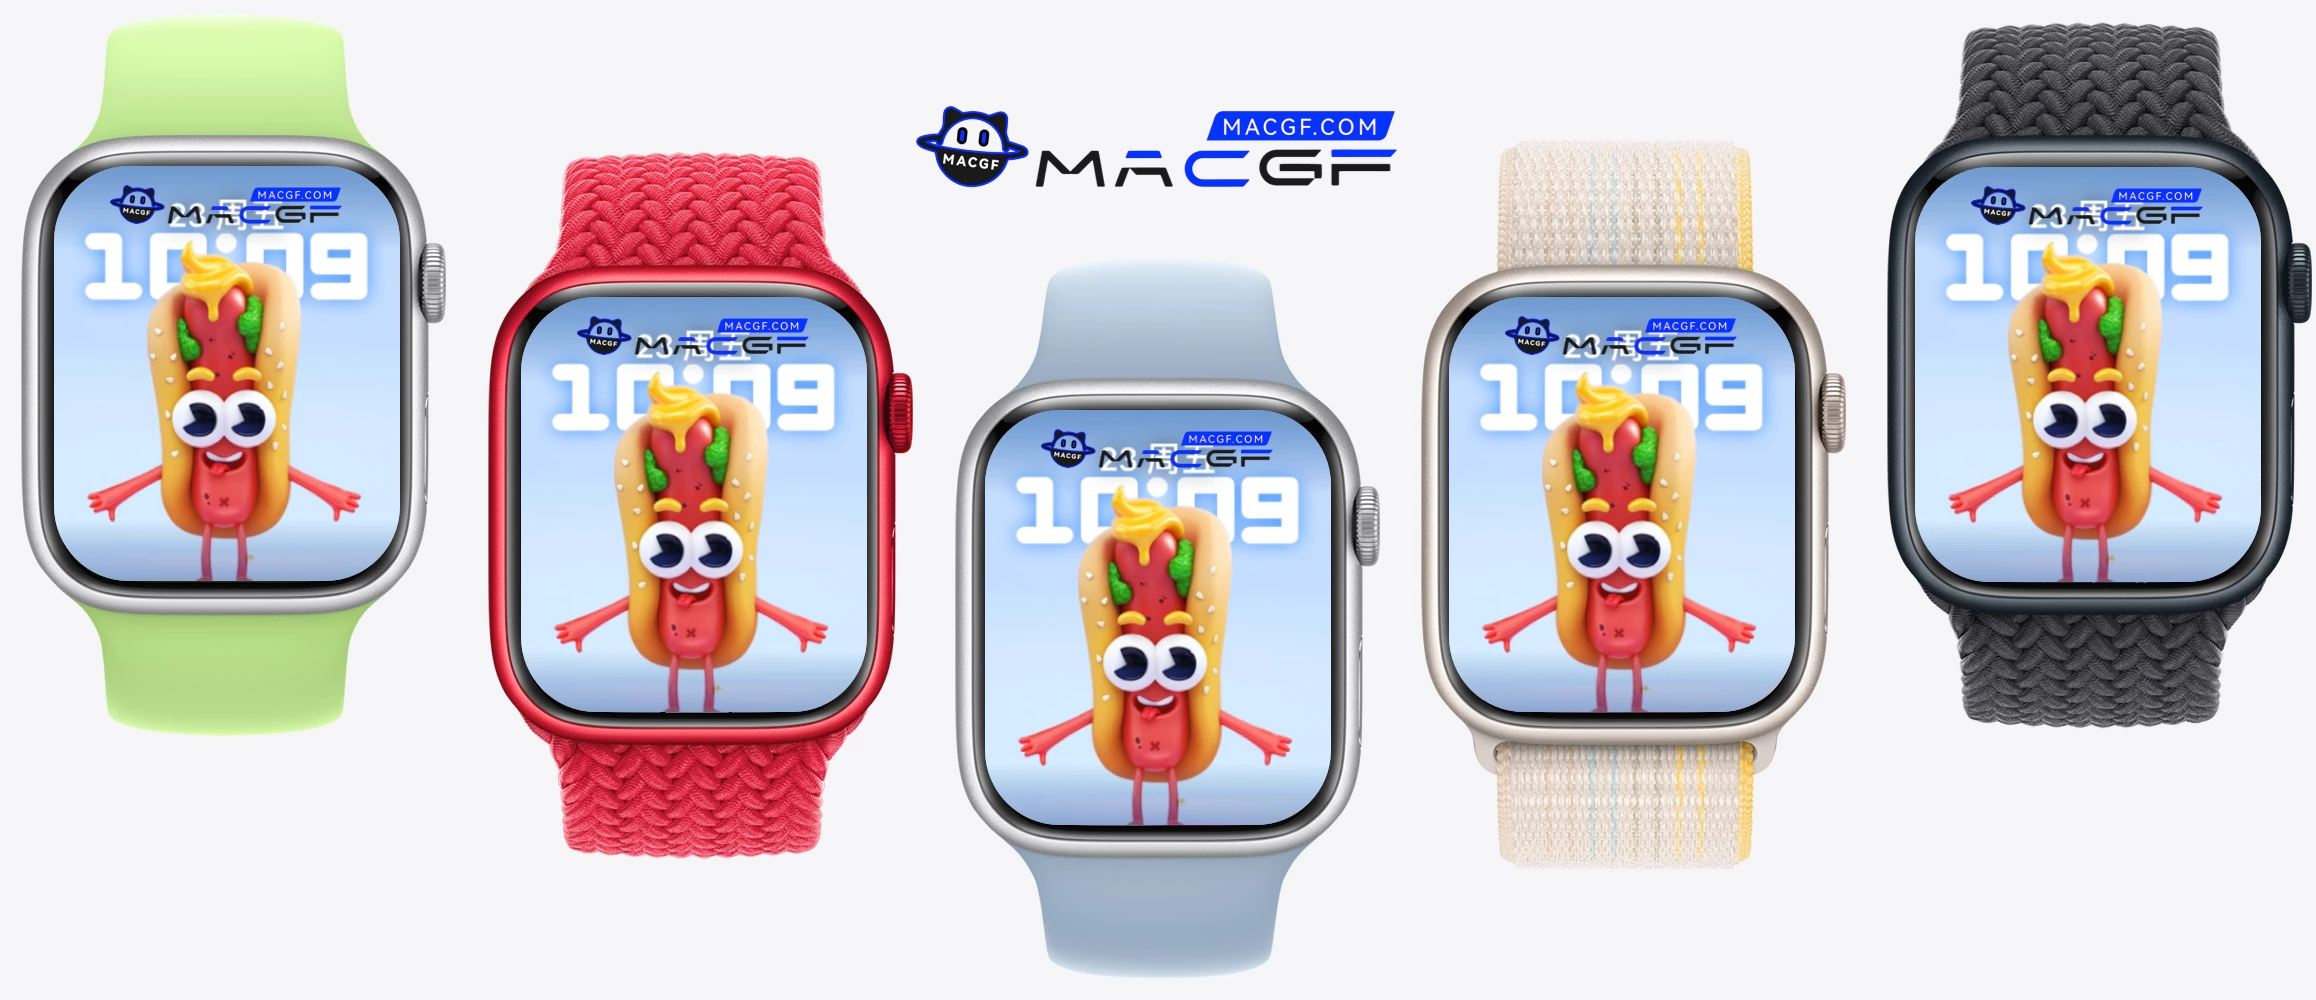 3D 卡通 热狗 Apple Watch 原生景深人像表盘 - macGF